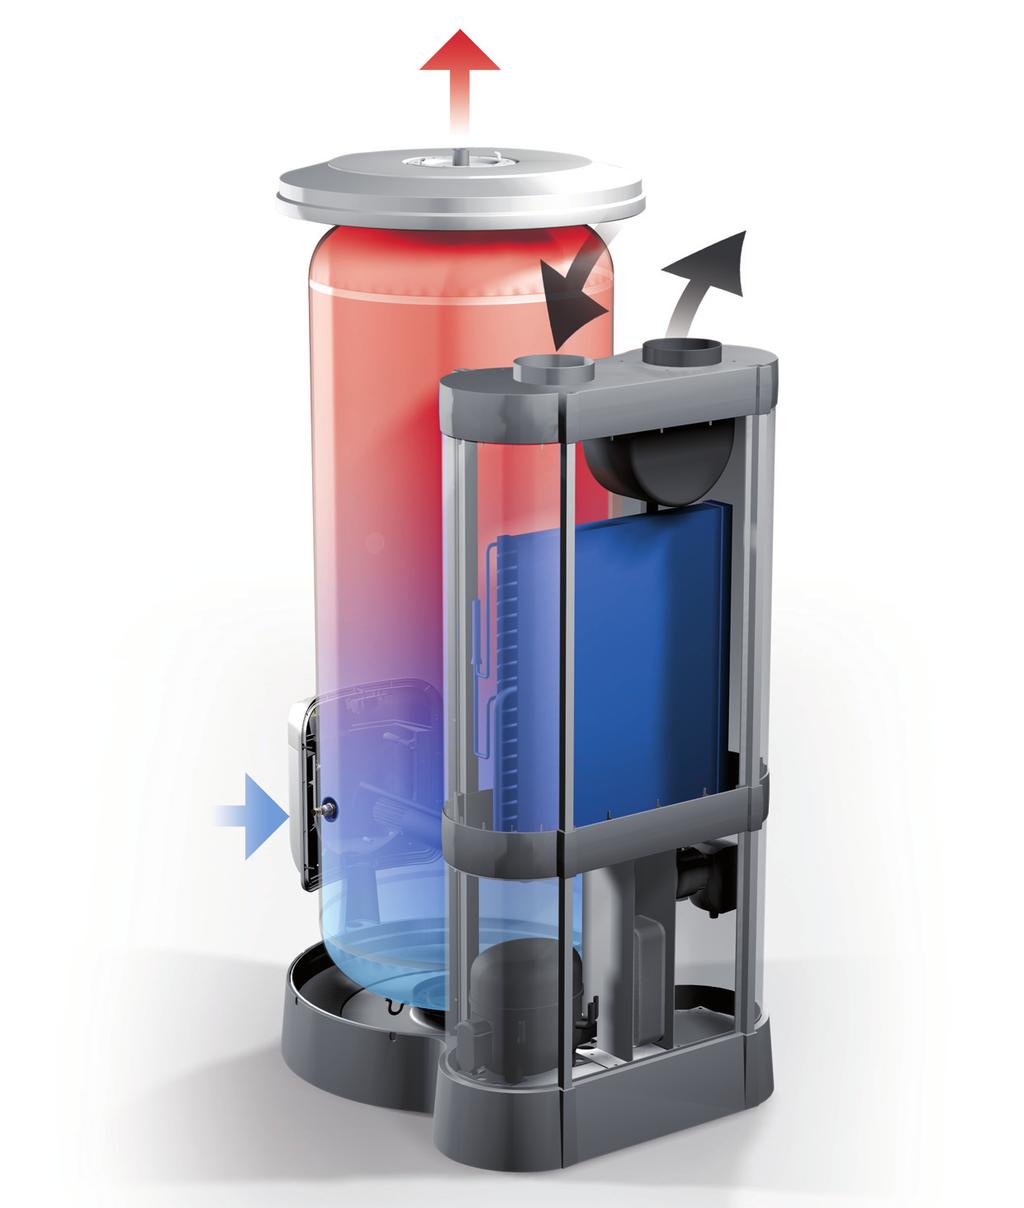 NUOS l innovazione per l ambiente Nuos utilizza l aria per ottenere acqua calda Il principio di funzionamento dello scaldacqua a pompa di calore Nuos è davvero innovativo perché sfrutta il calore